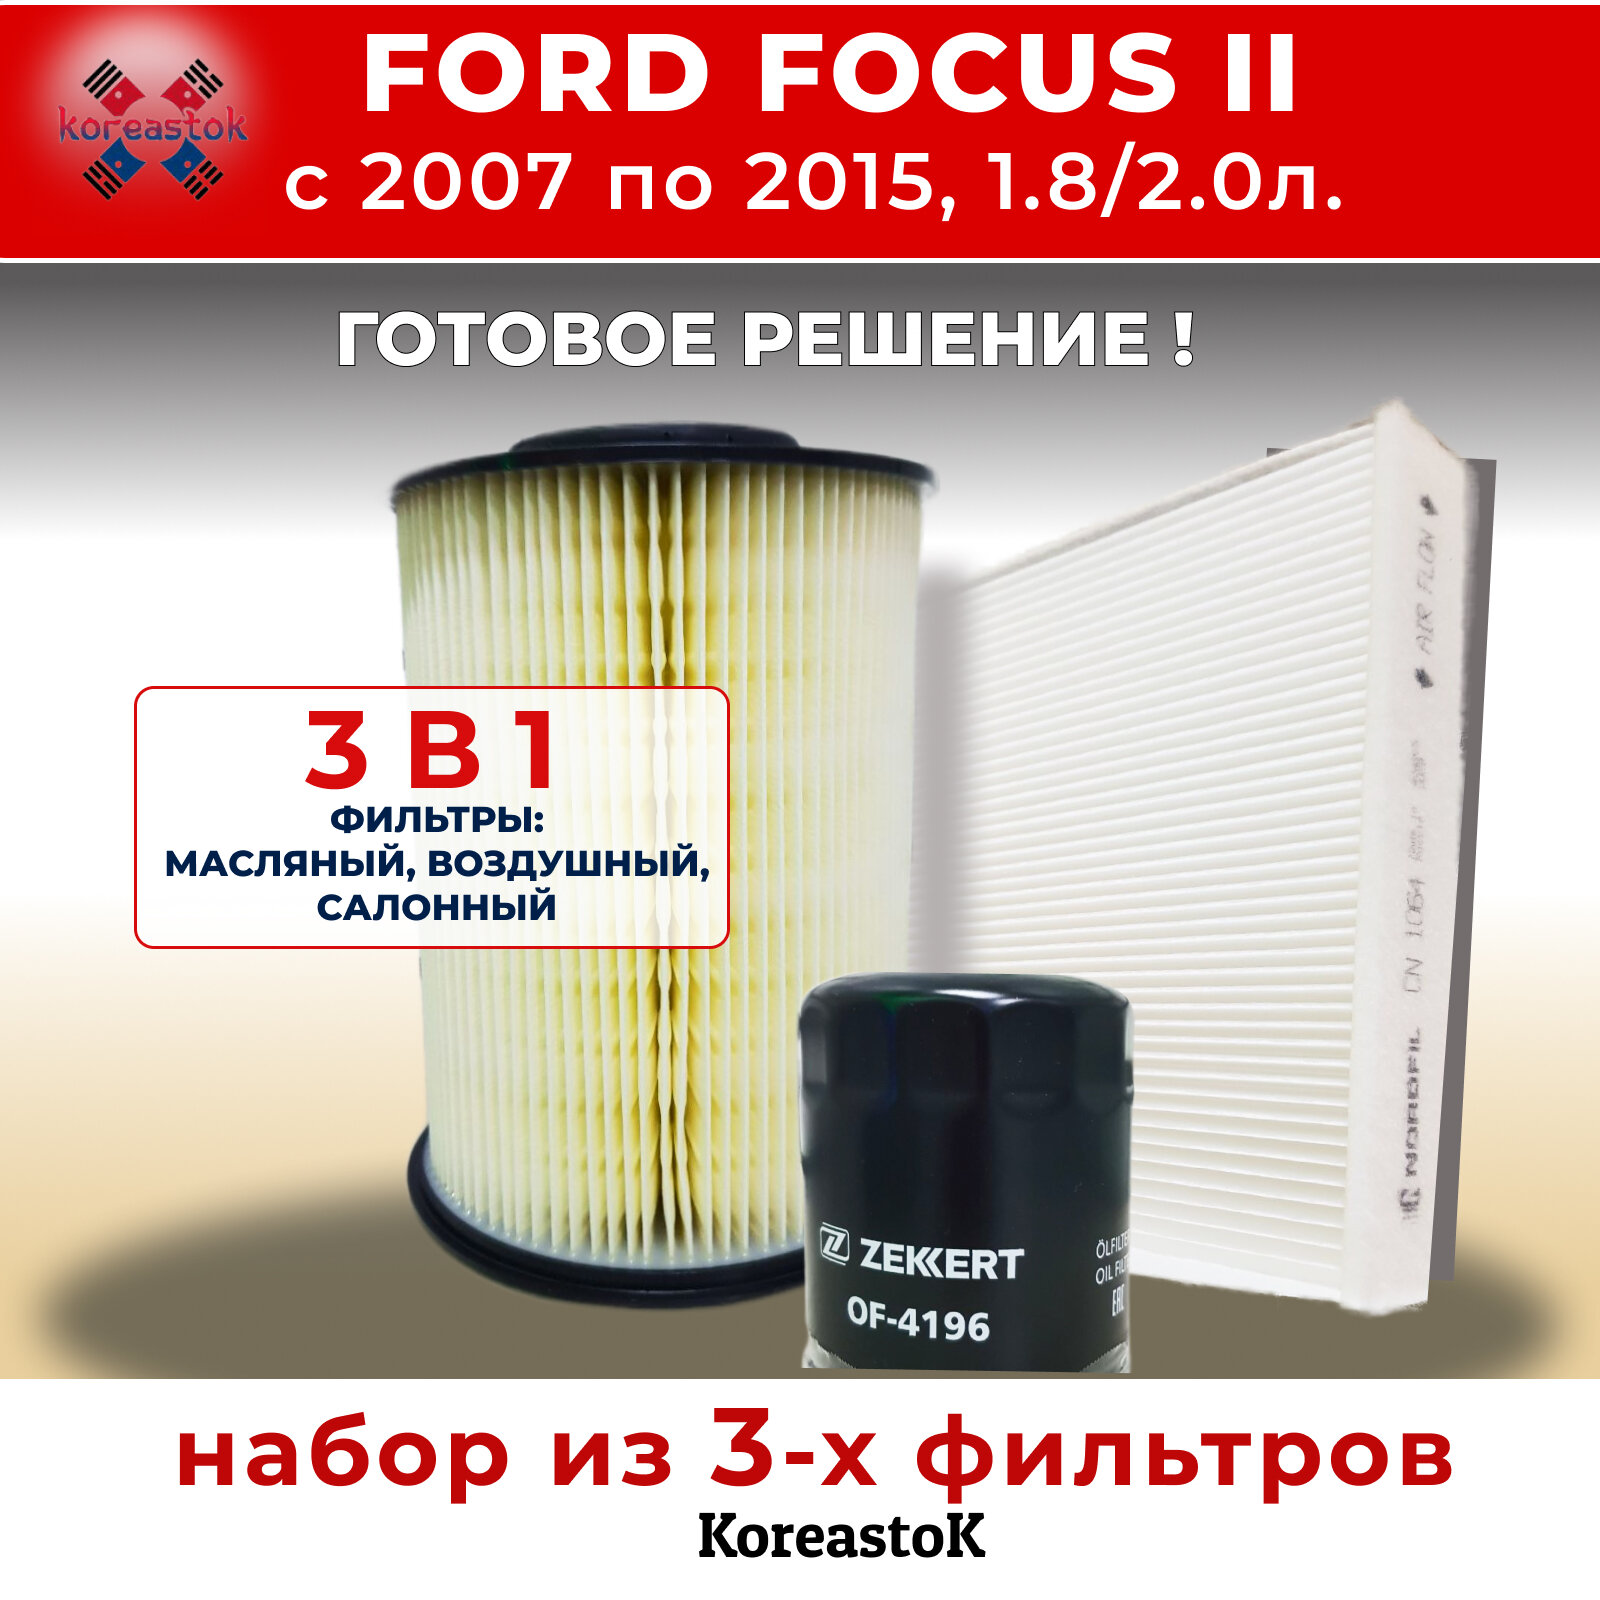 Комплект фильтров для Ford Focus II 2007-2015г. в. 1.8/2.0 (масляный, воздушный, салонный)